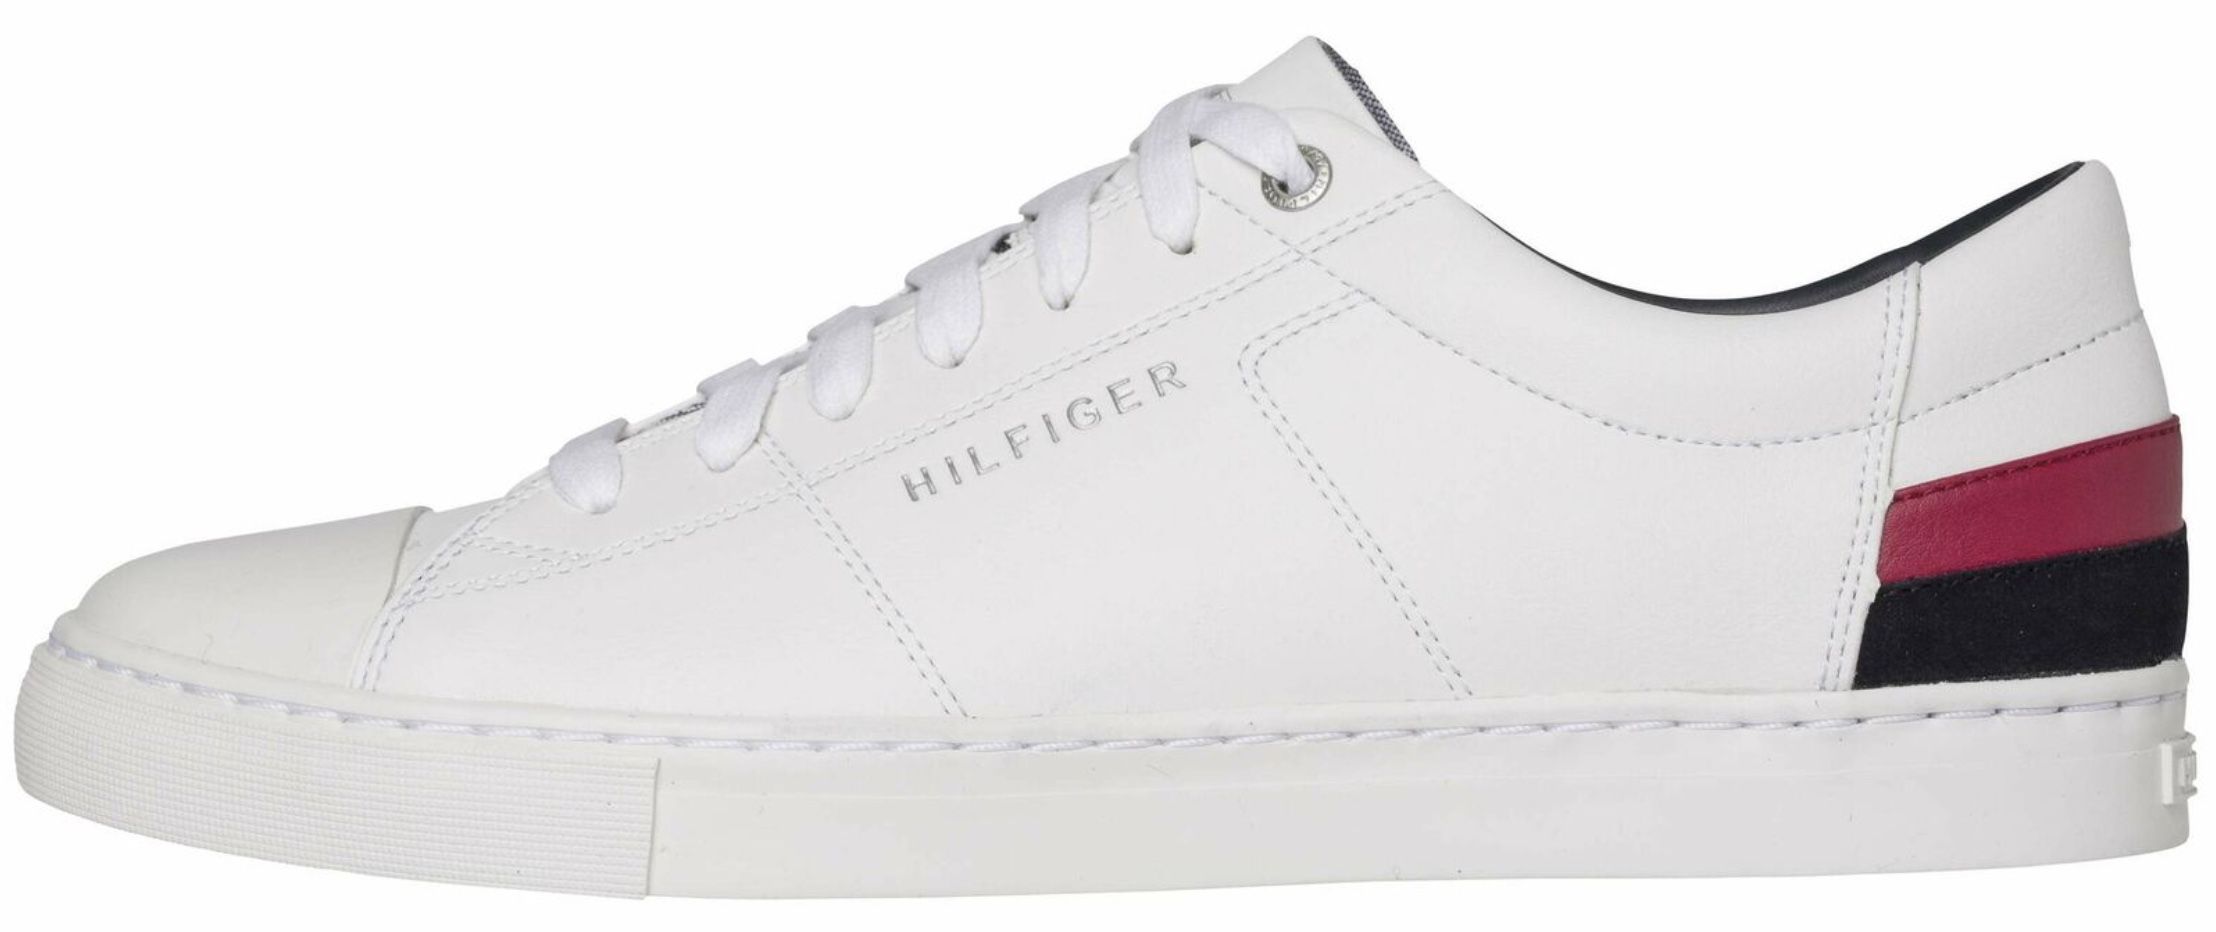 Tommy Hilfiger Corporate Stripes Leder Sneaker in Weiß für 40€ (statt 56€)